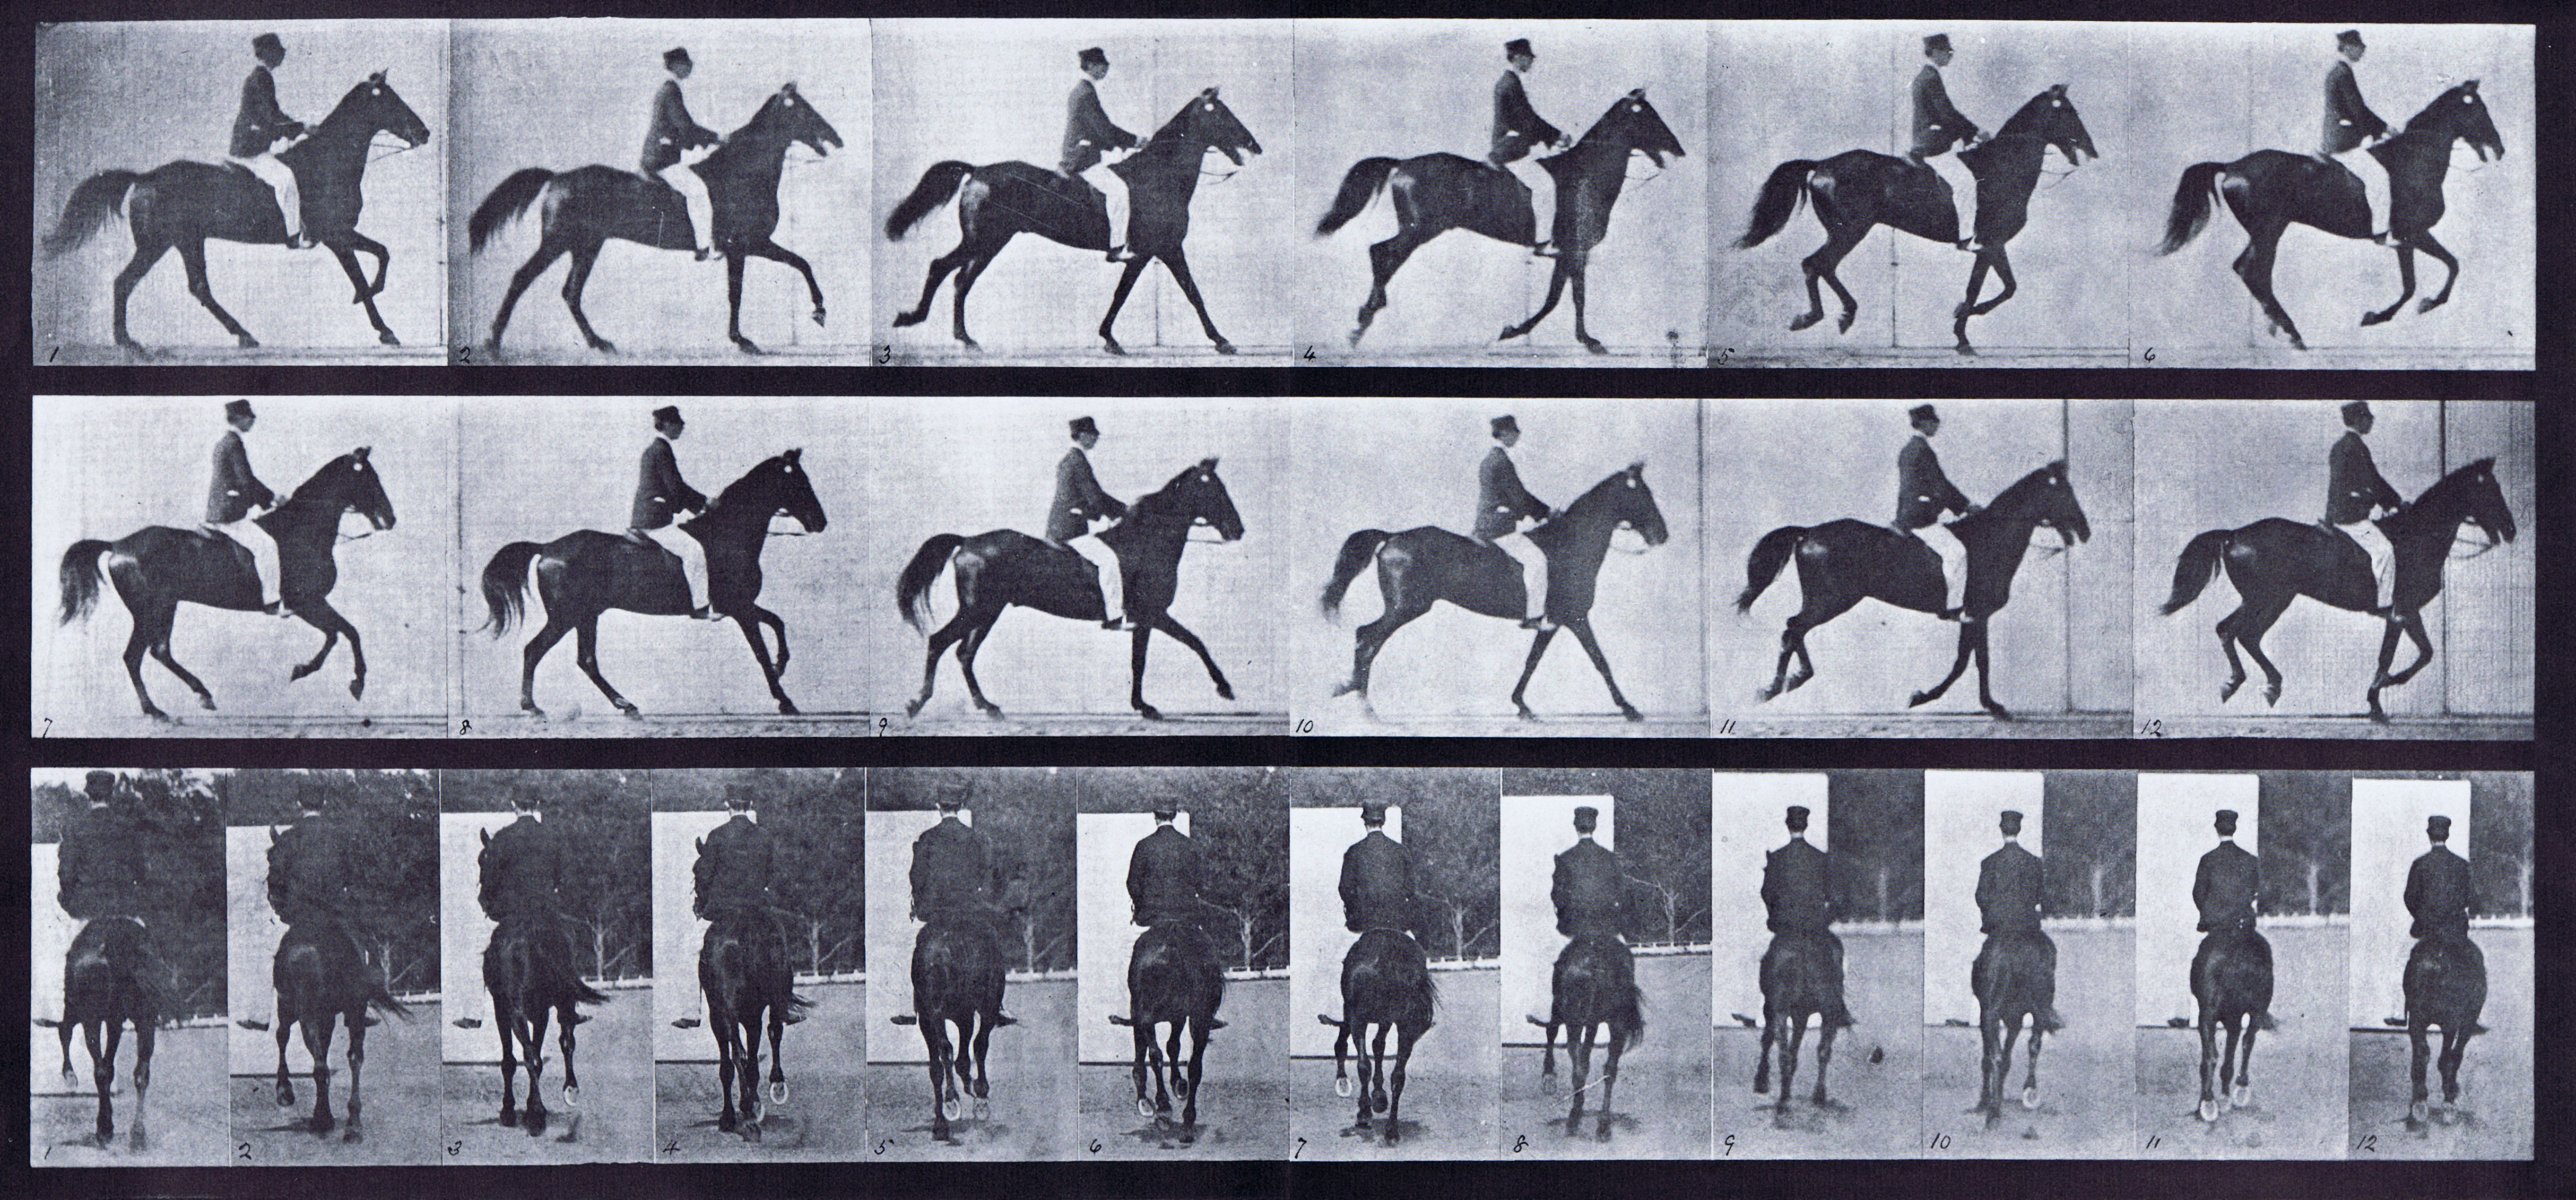 Передвижение лошади. Эксперимент Эдварда Мейбриджа. Хронофотография мейбридж.